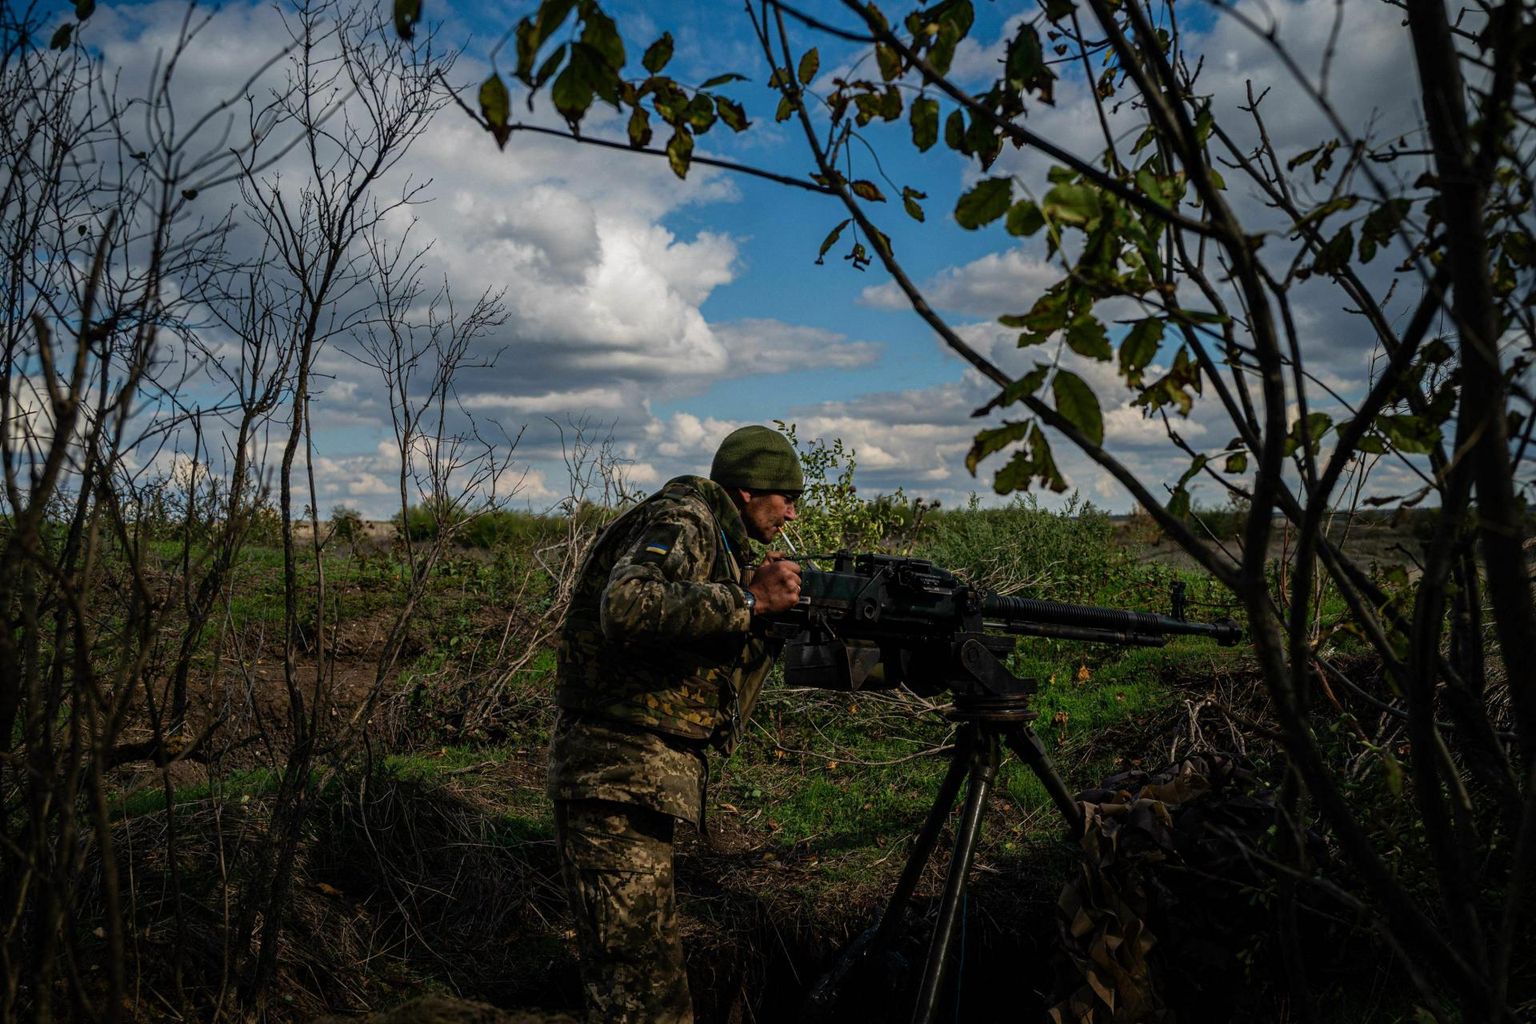 35-aastane Ukraina sõdur Viktor kontrollib raskekuulipildujat rindejoonel Lõuna-Ukrainas Mõkolajivi oblastis. 